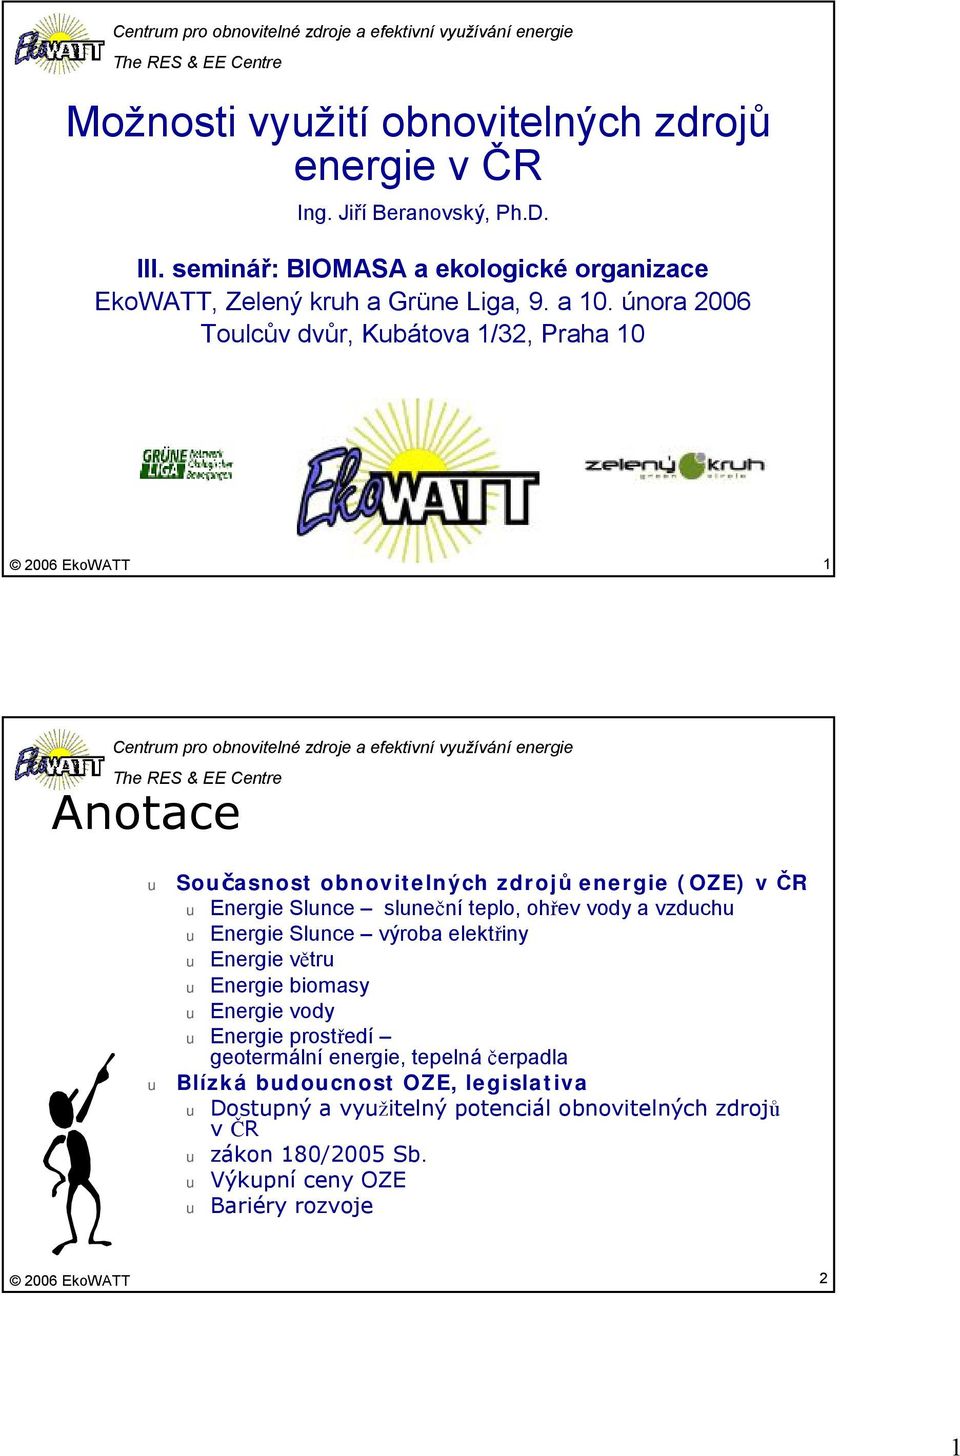 února 2006 Tolcův dvůr, Kbátova 1/32, Praha 10 1 Centrm pro obnovitelné zdroje a efektivní vyžívání energie Anotace Sočasnost obnovitelných zdrojů energie (OZE) v ČR Energie